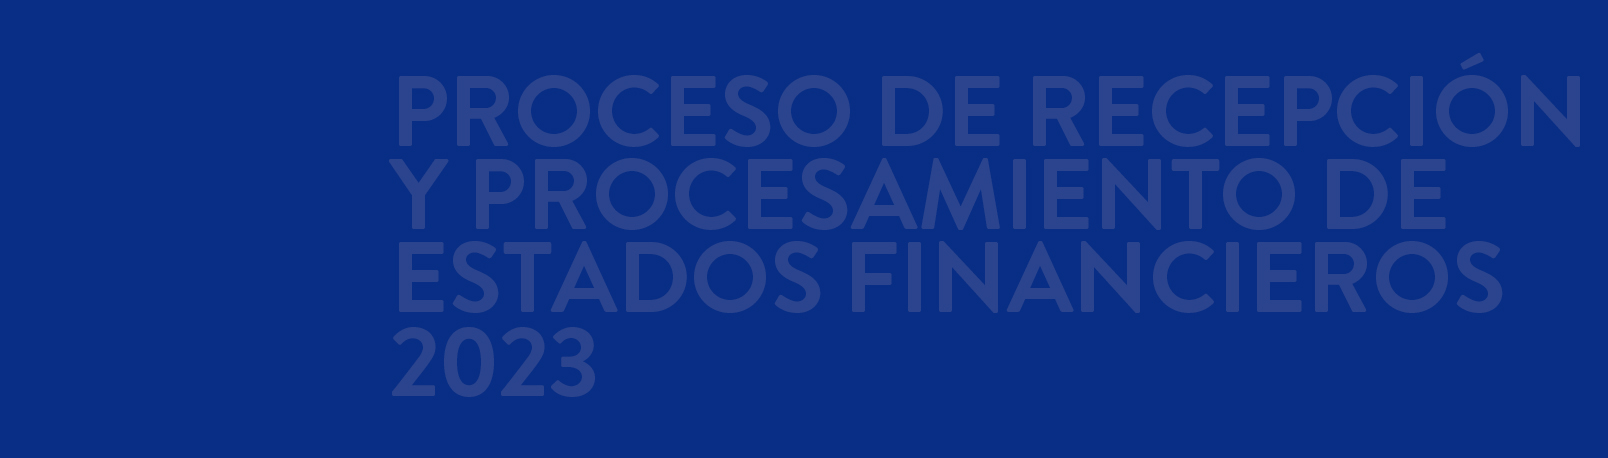 Proceso de Recepción y Procesamiento de Estados Financieros 2023